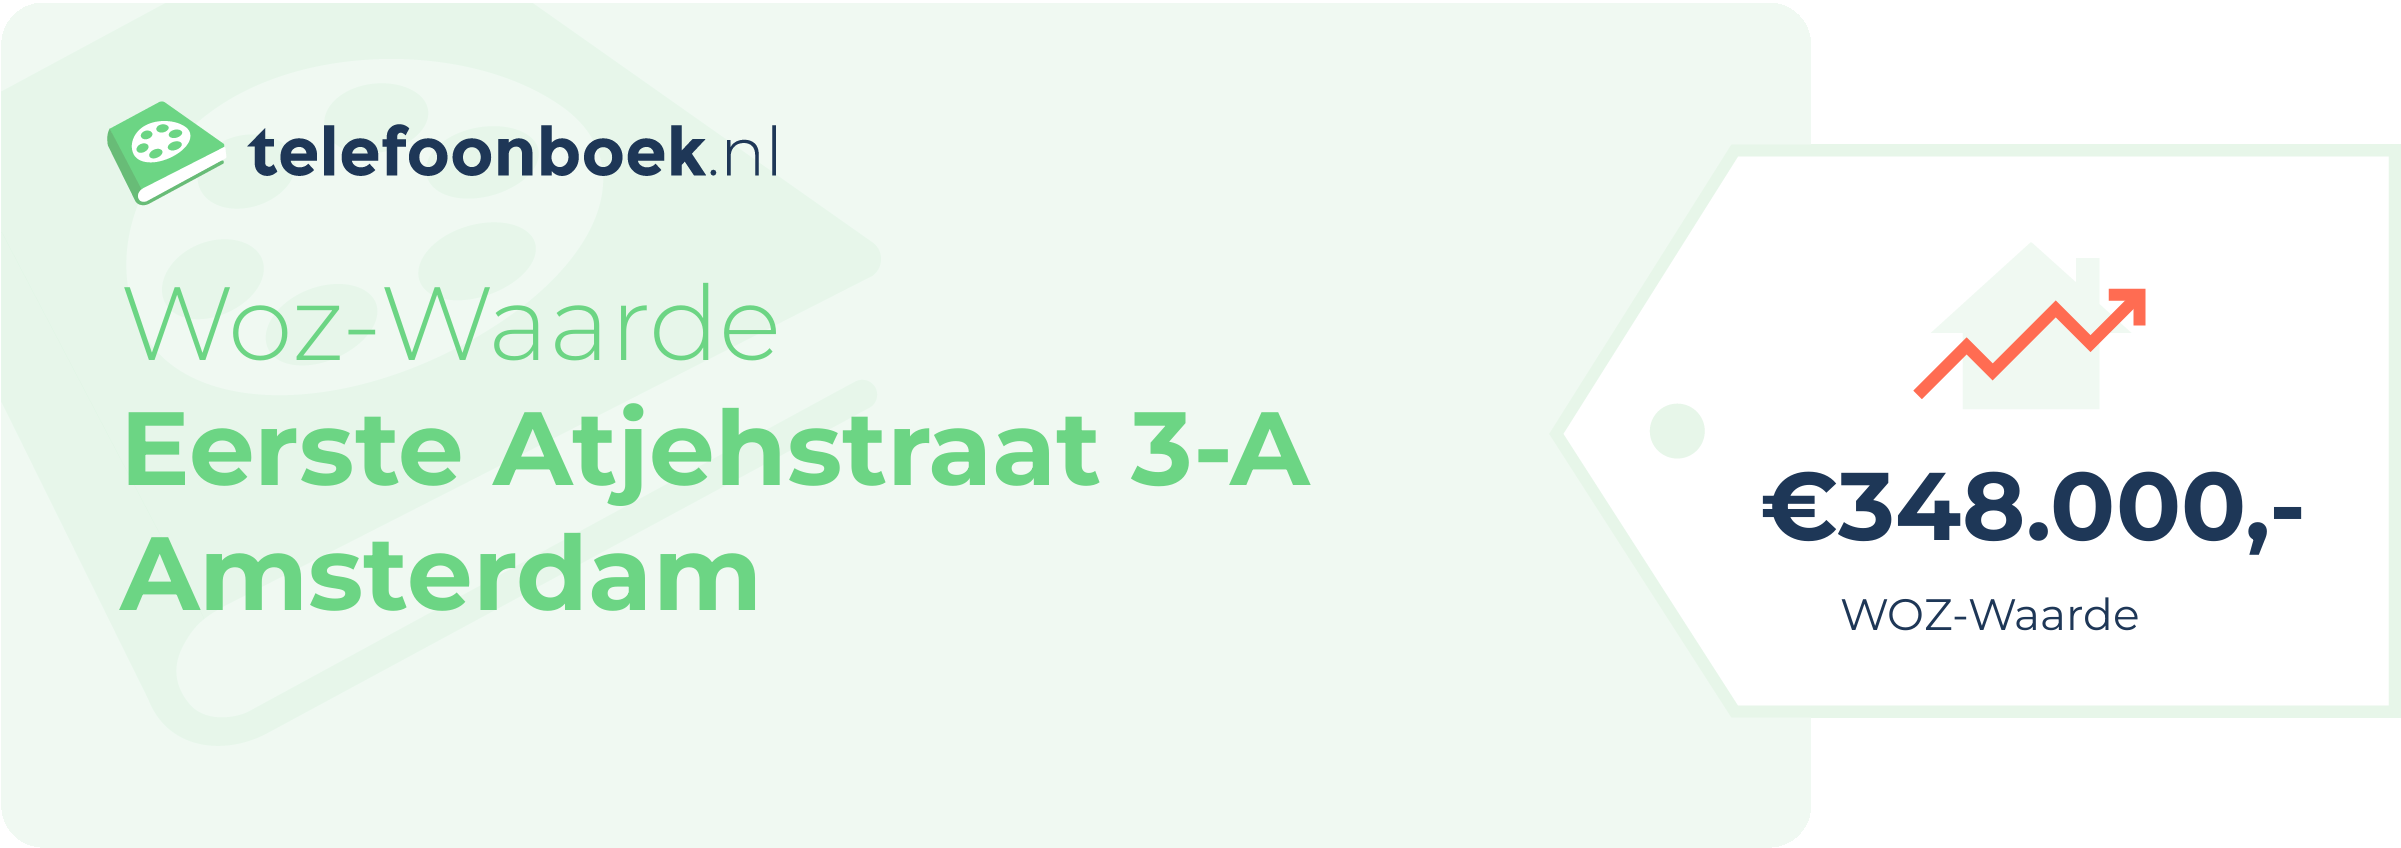 WOZ-waarde Eerste Atjehstraat 3-A Amsterdam